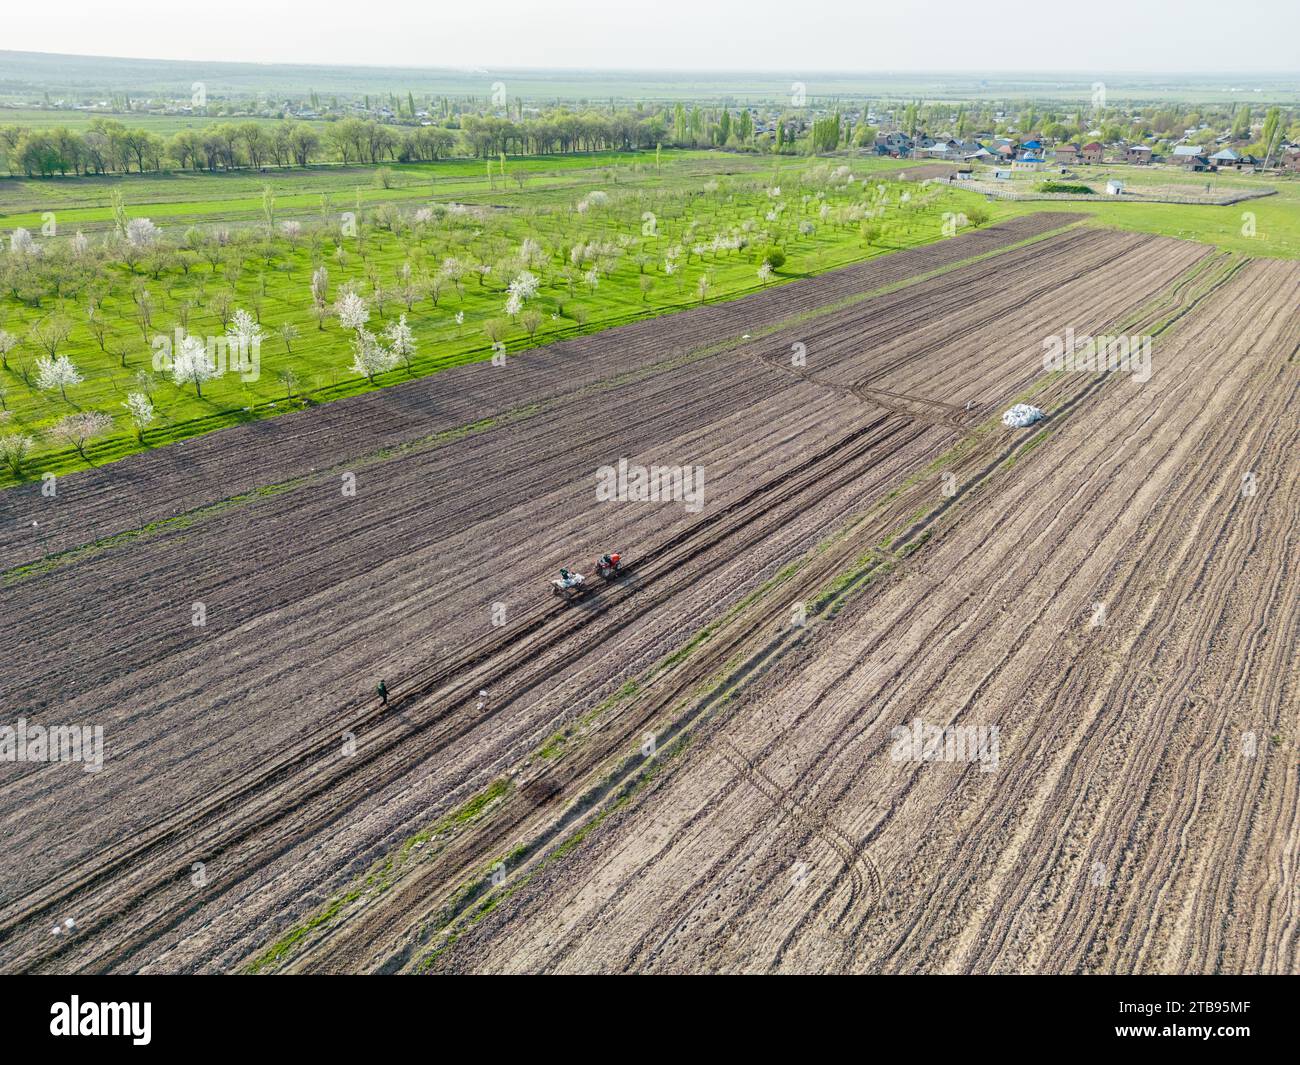 Vue aérienne des champs agricoles avec étang pour l'irrigation goutte à goutte pendant la période de floraison printanière Banque D'Images